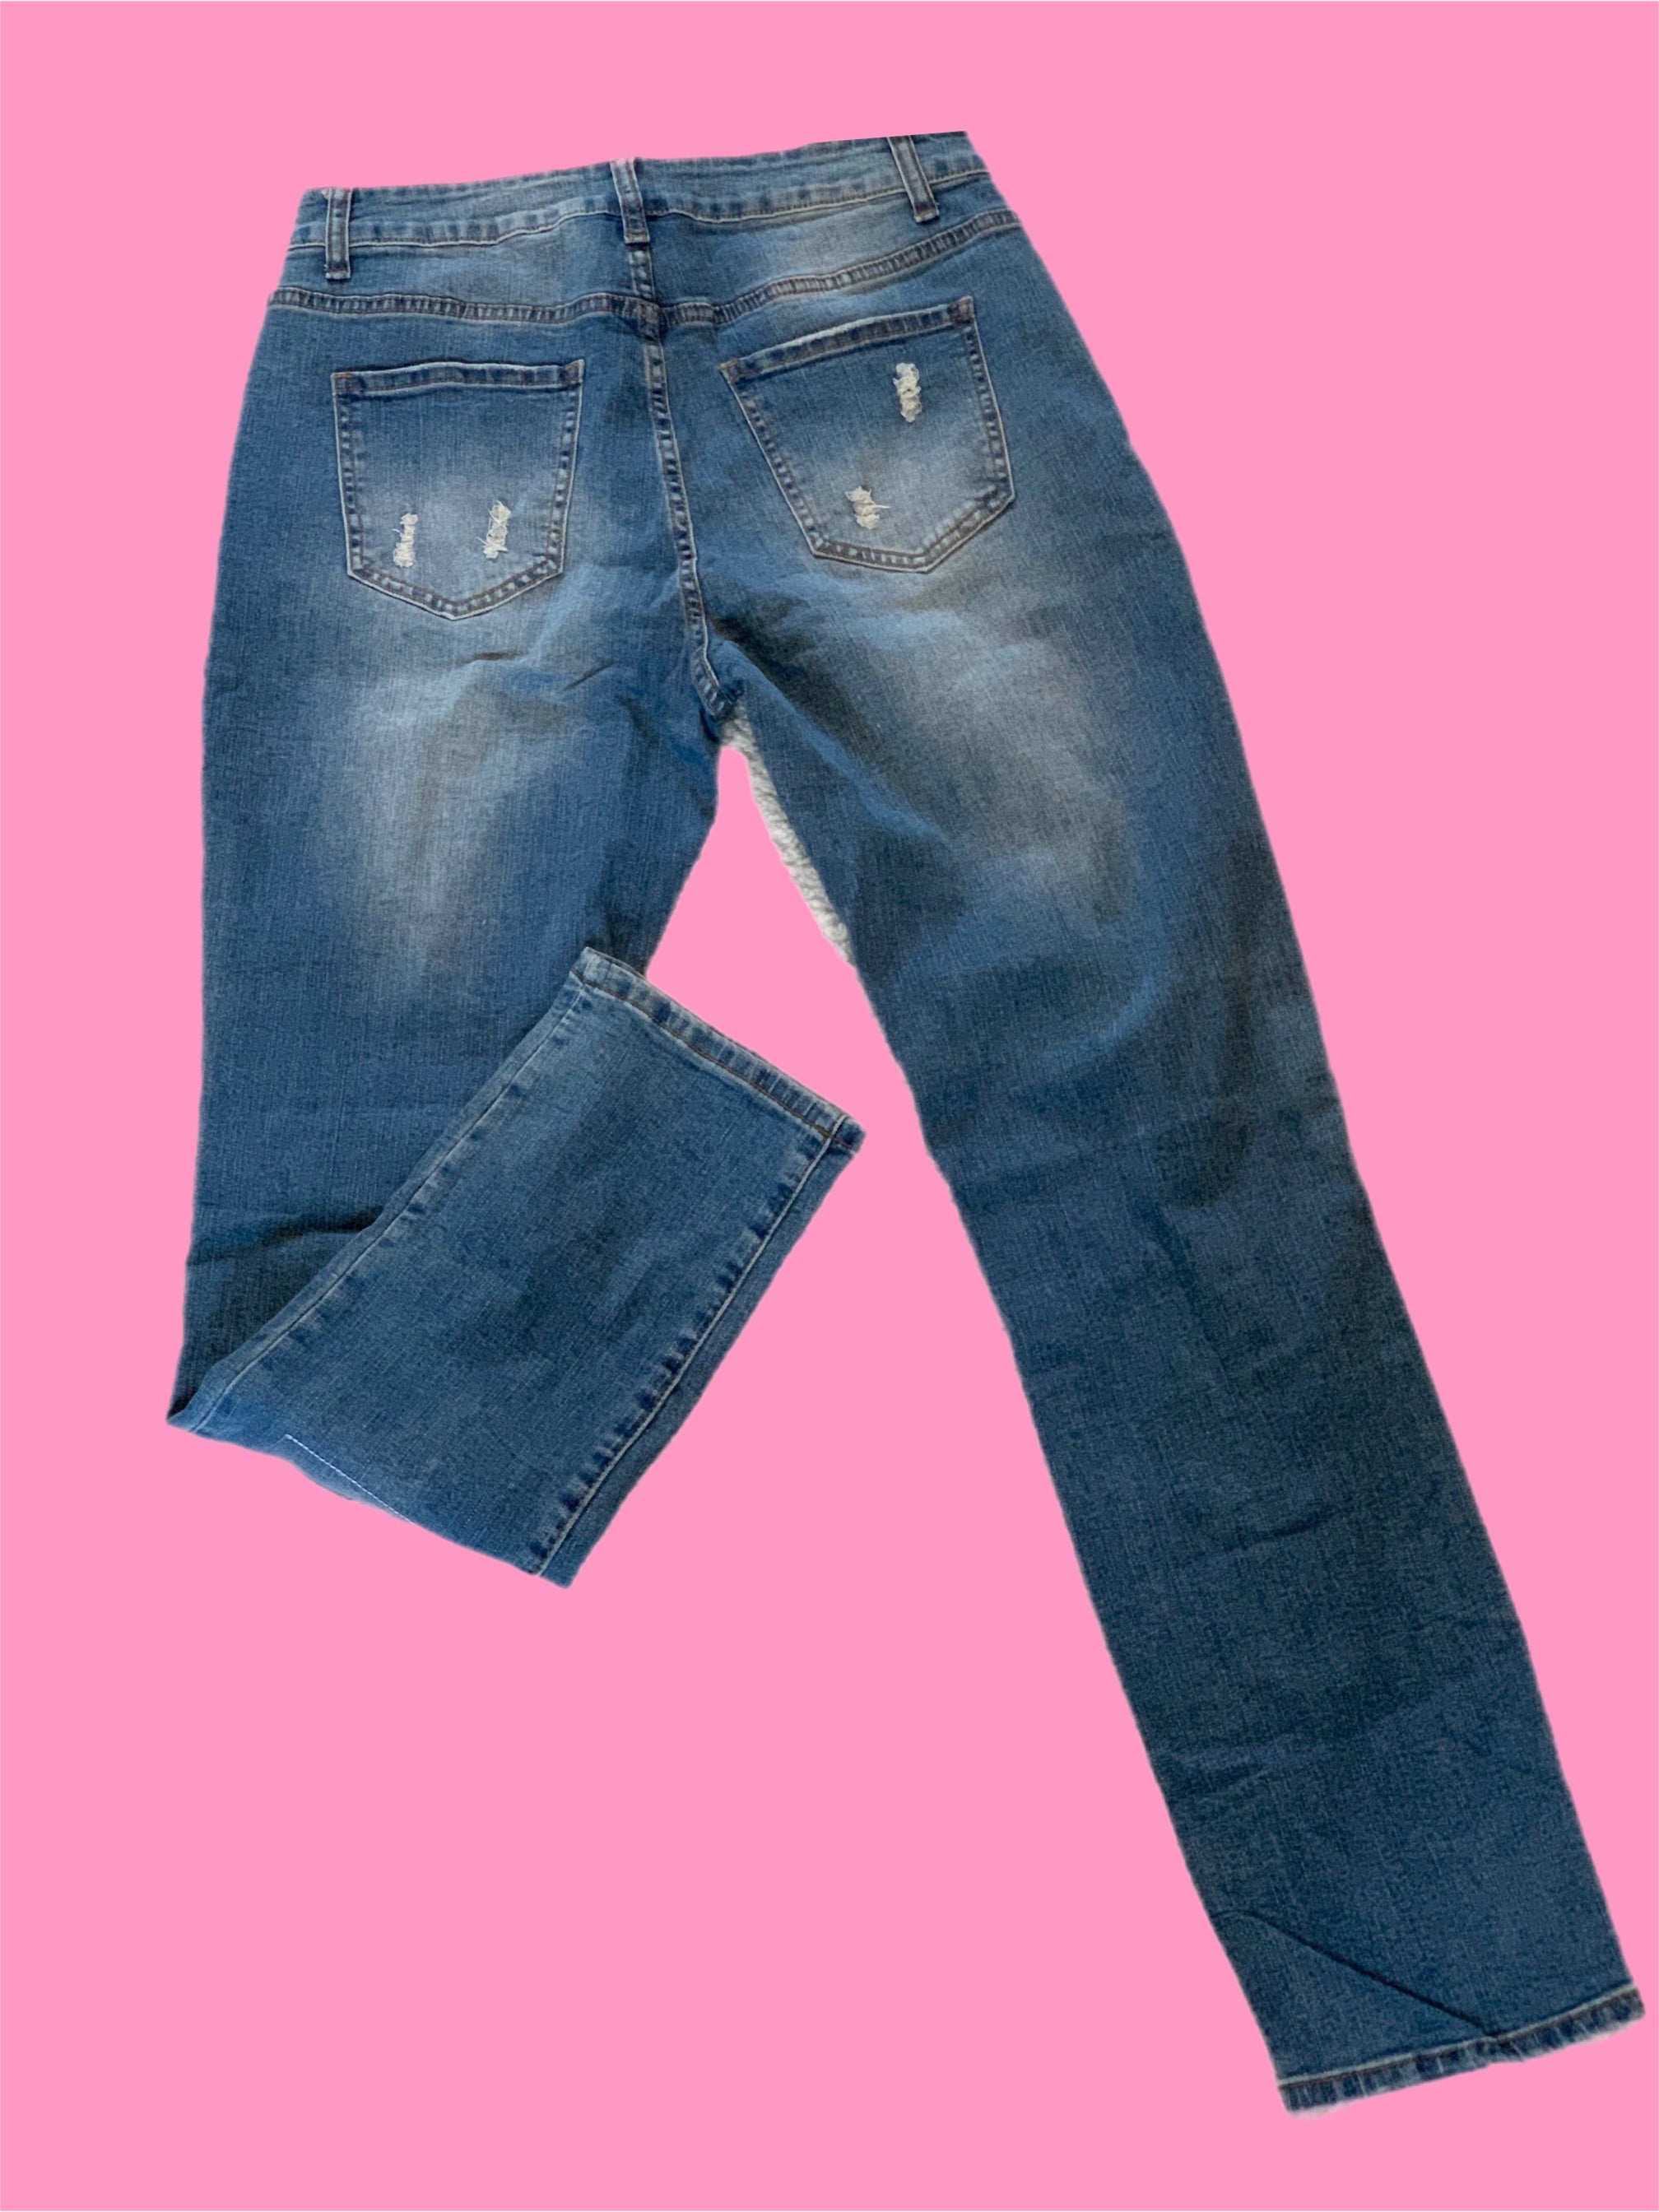 Hibiscus Flamingo Patch Distressed Denim Jeans